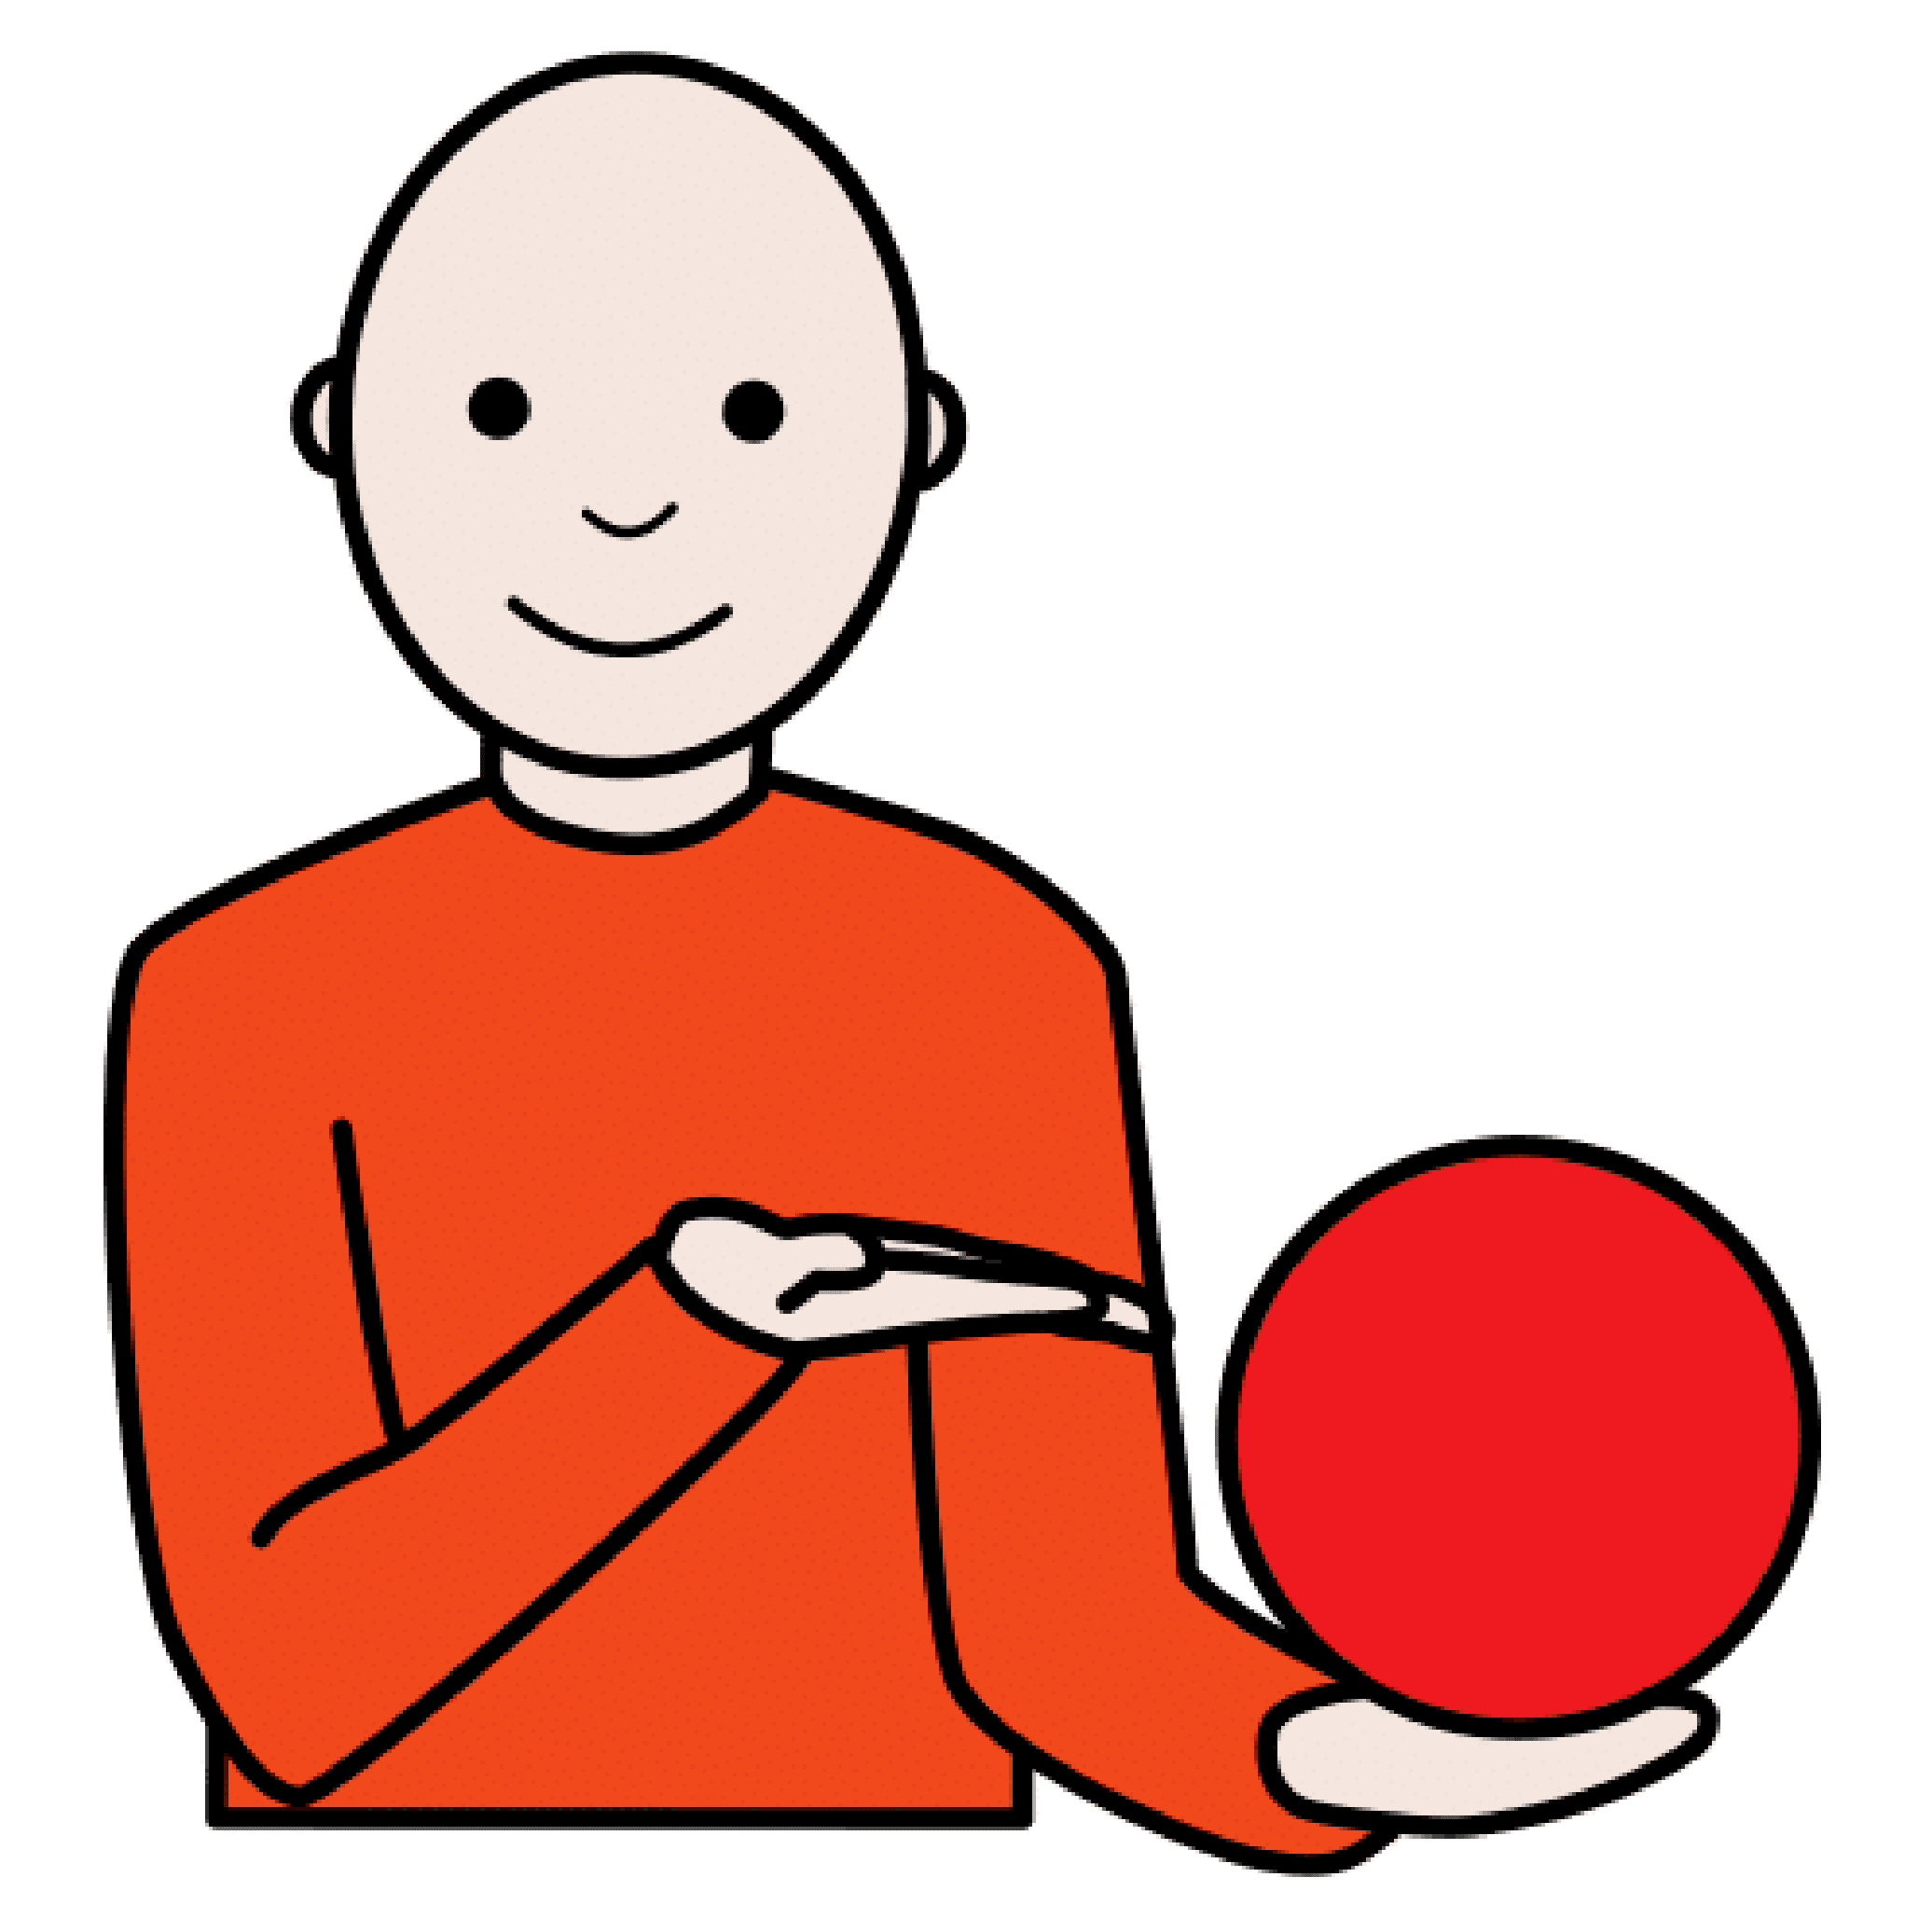 Persona de frente con jersey naranja que sostiene en su mano izquierda una pelota roja. La mano derecha muestra la pelota roja.